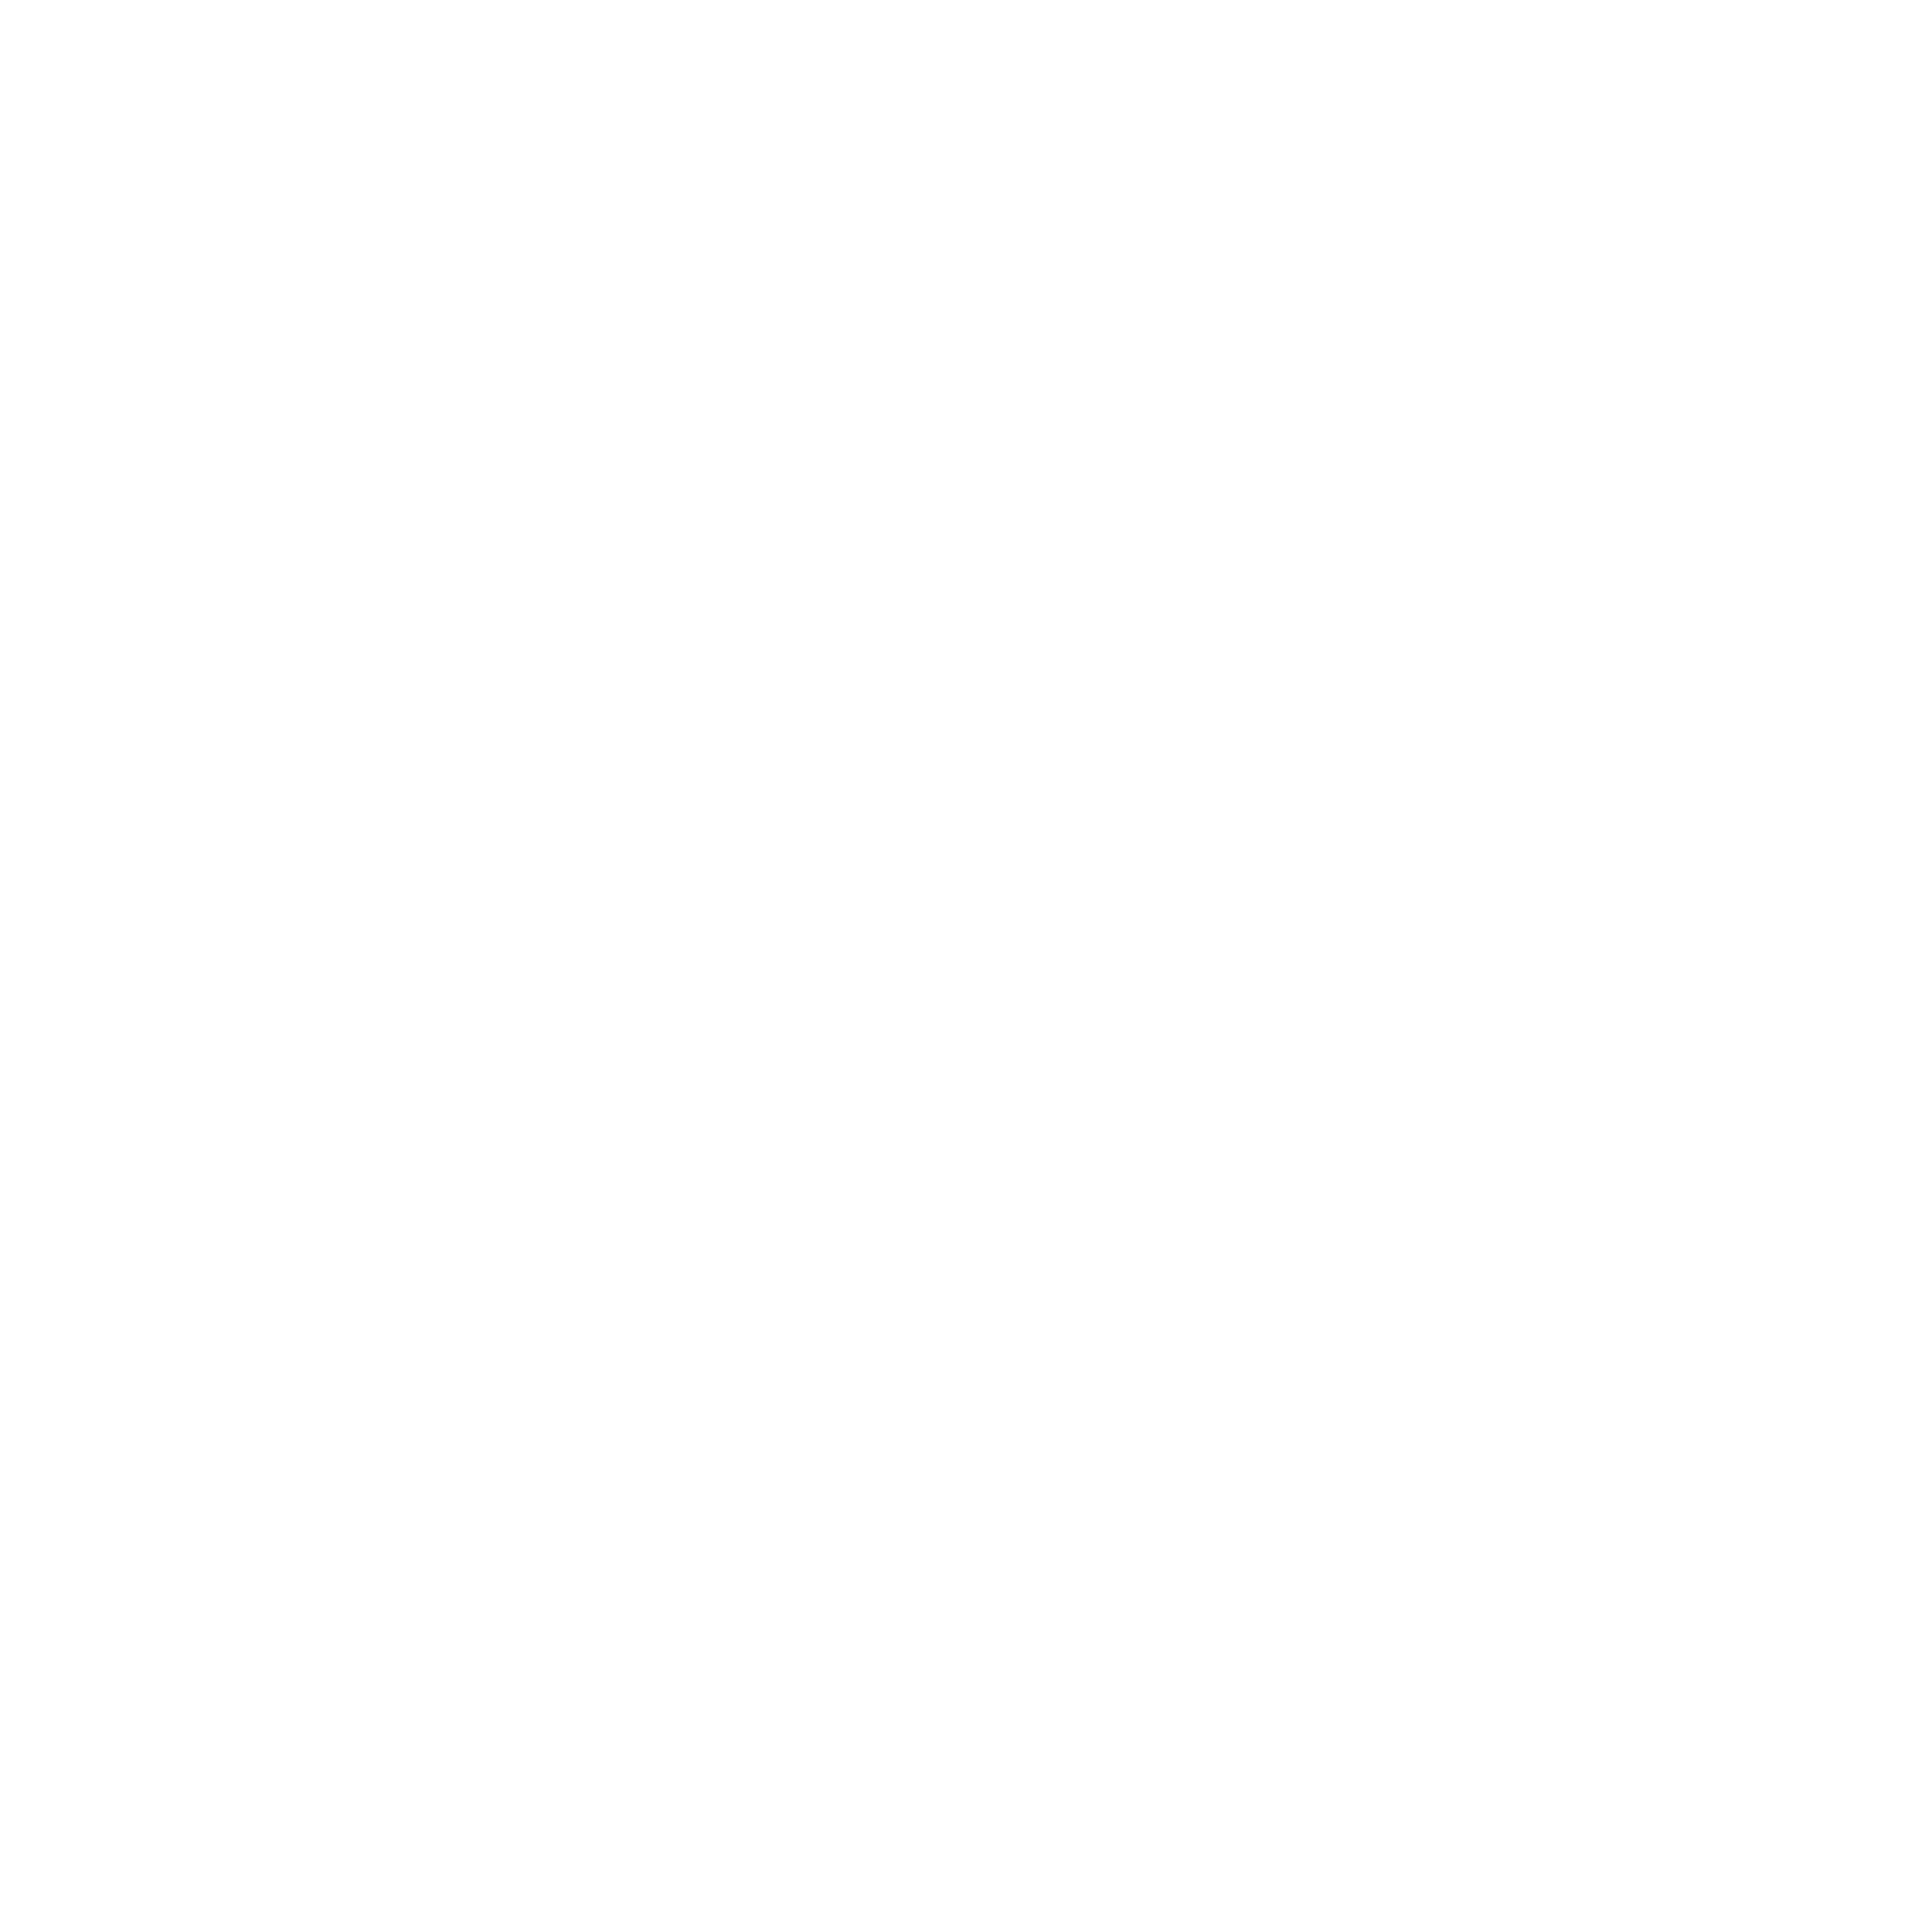 Ilia Jessica Castro